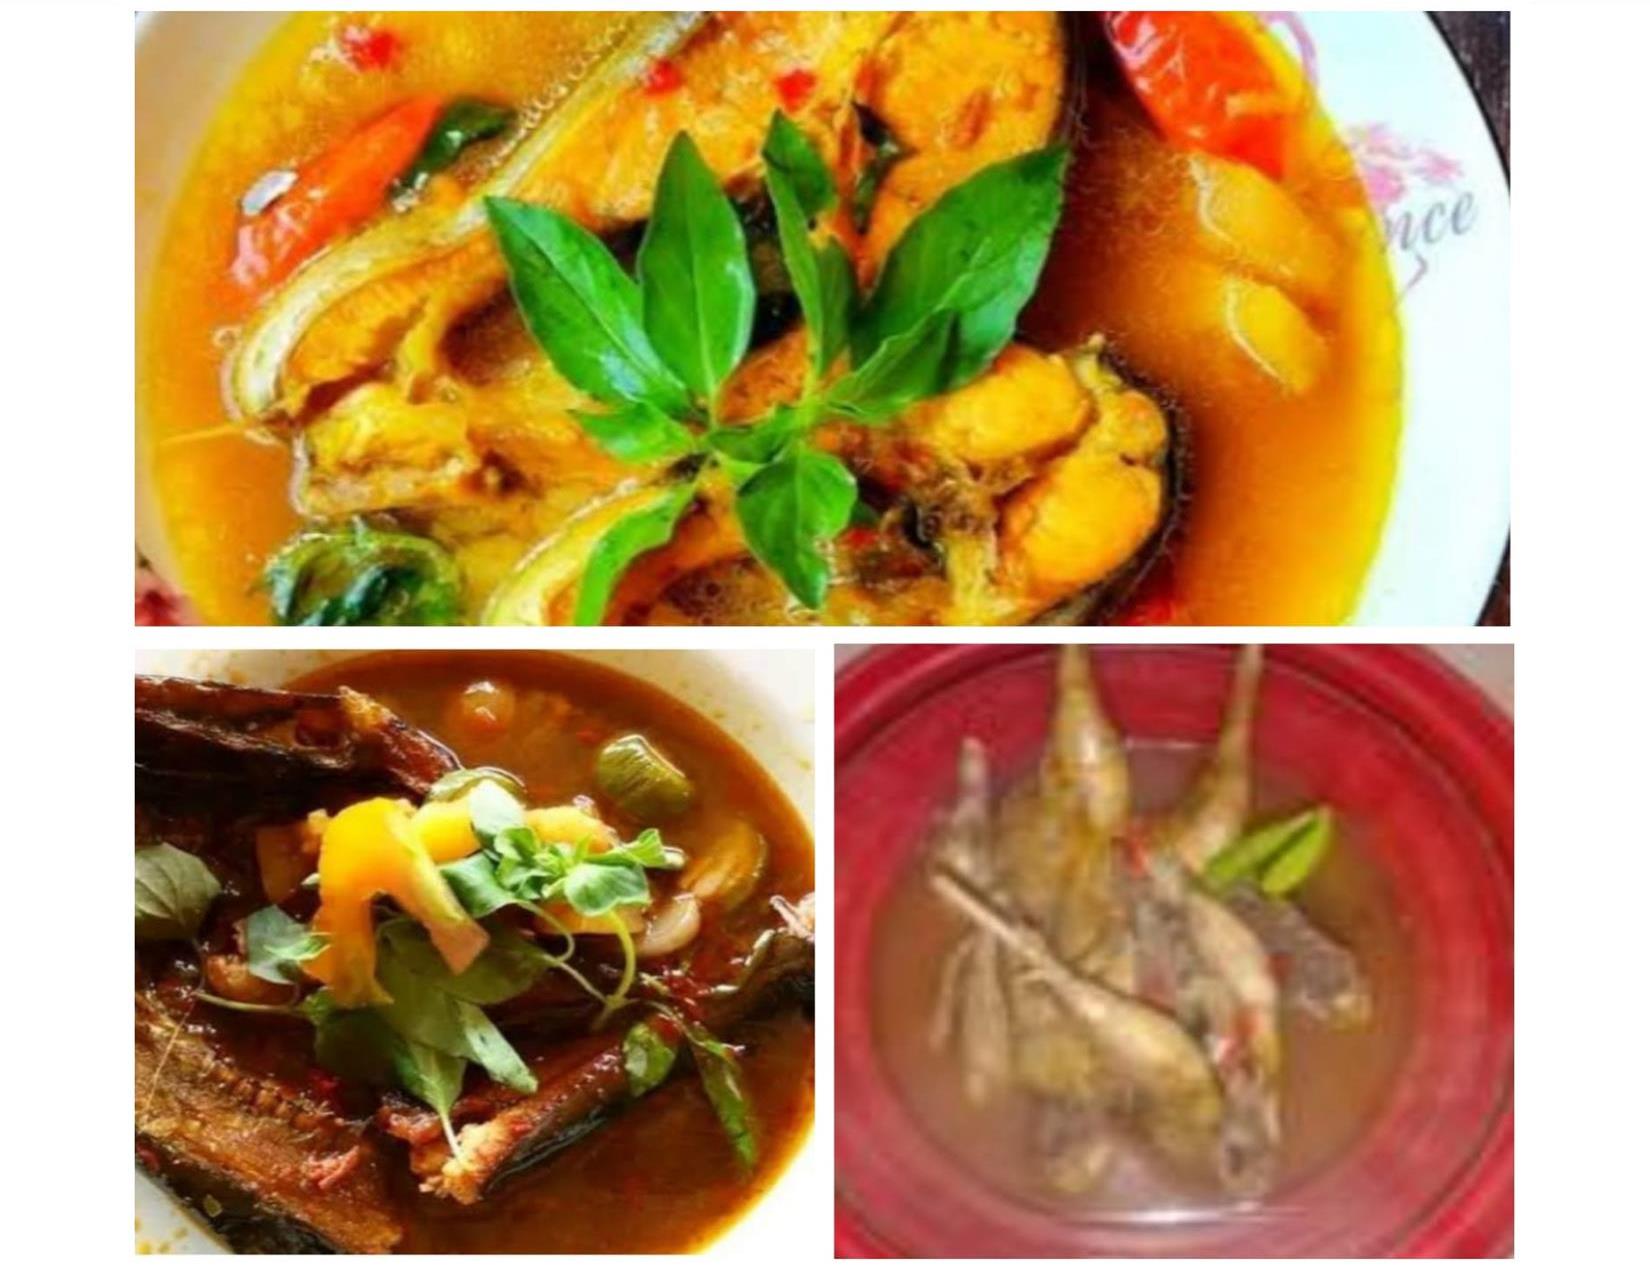 Tinggal Pilih, Ini 3 Tempat Makan Pindang Enak yang Berdekatan di Jakabaring Palembang